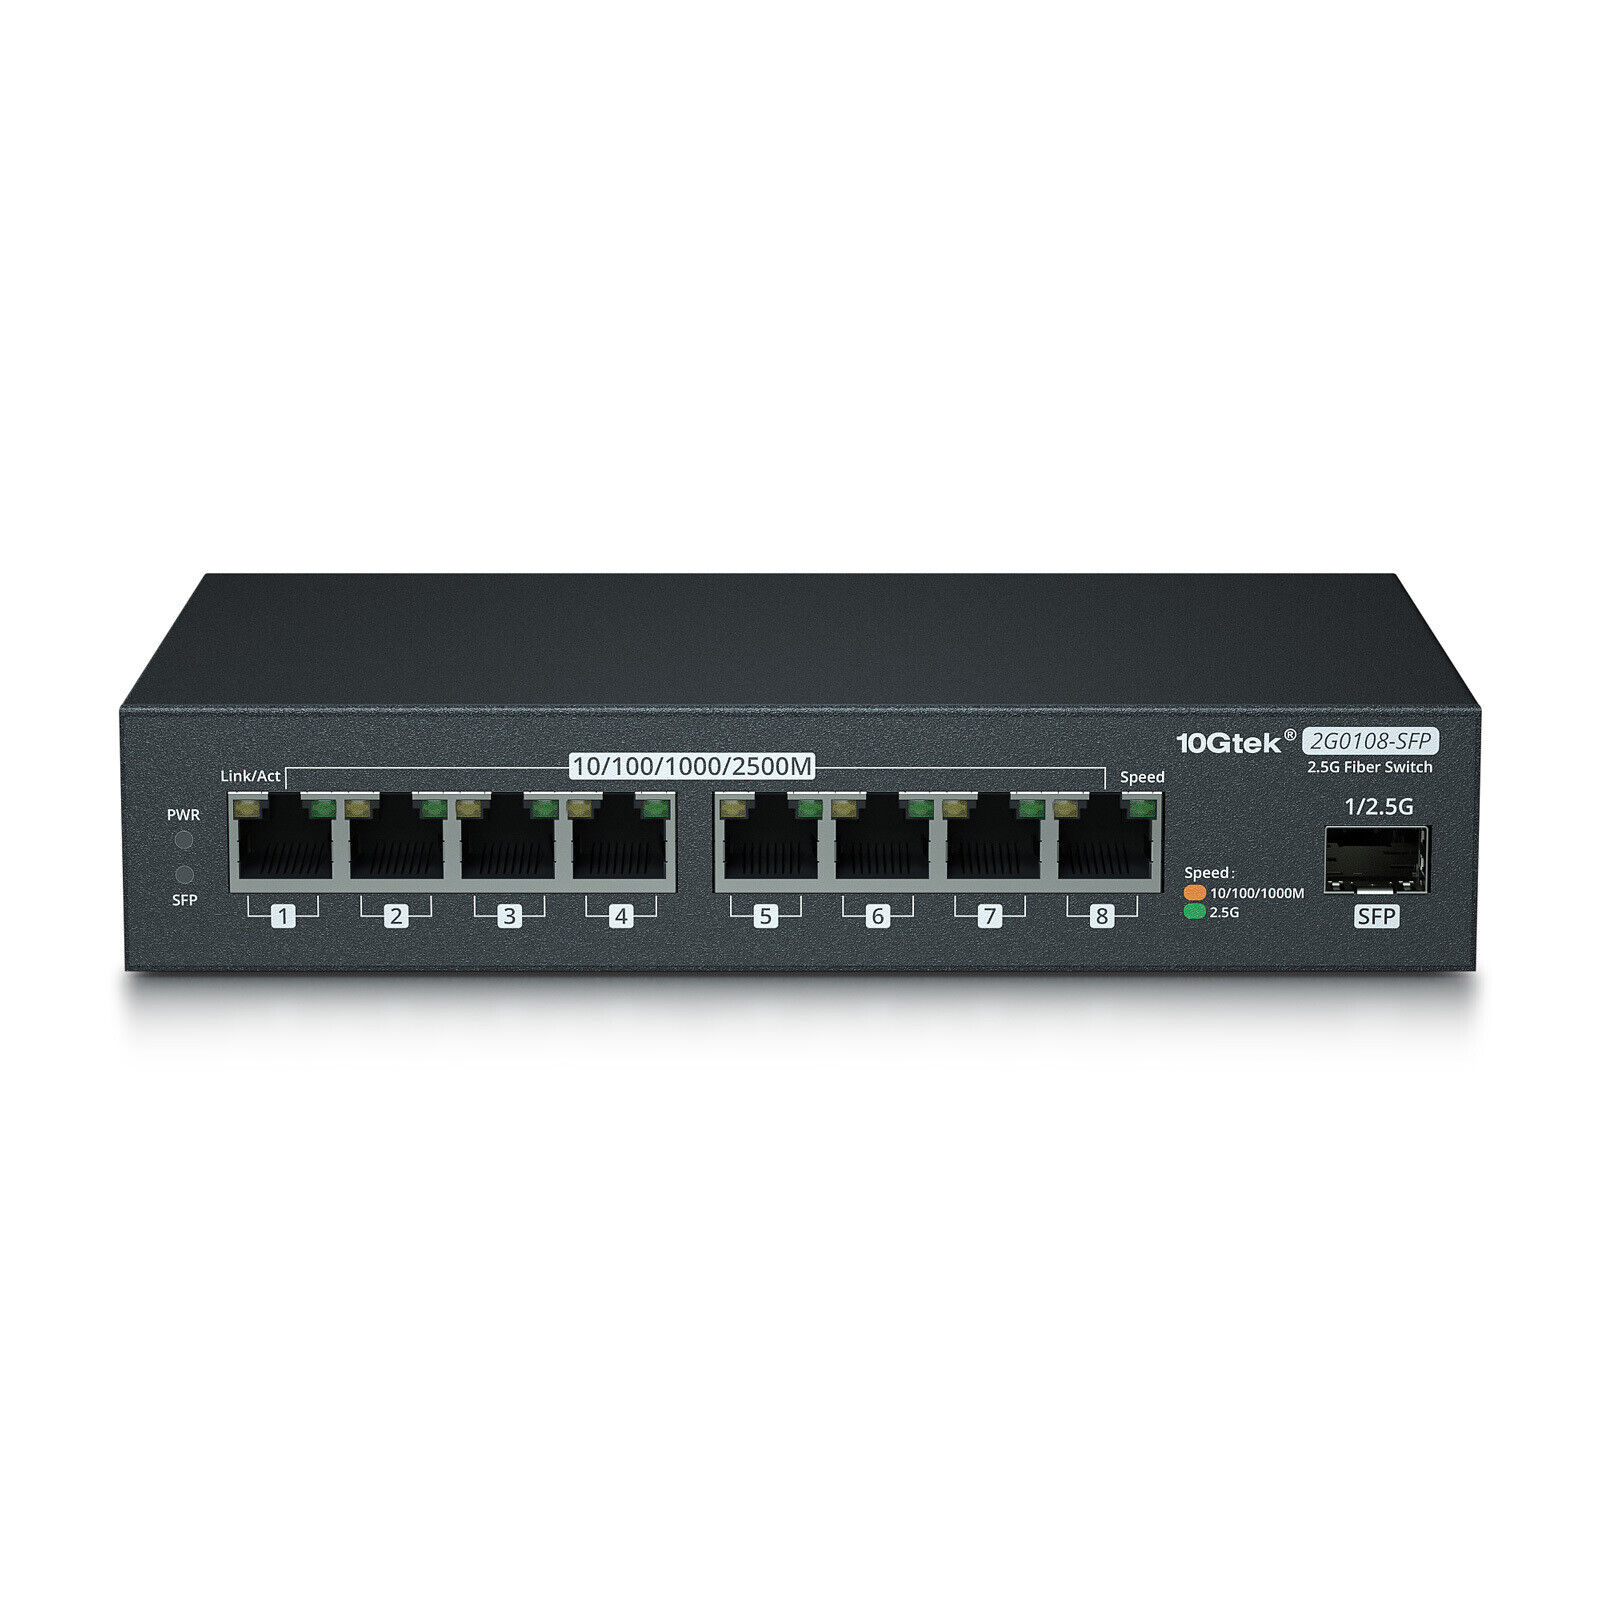 8 Ports Media Converter SFP, 1000M/2.5G Multi Gigabit Ethernet Network Switch